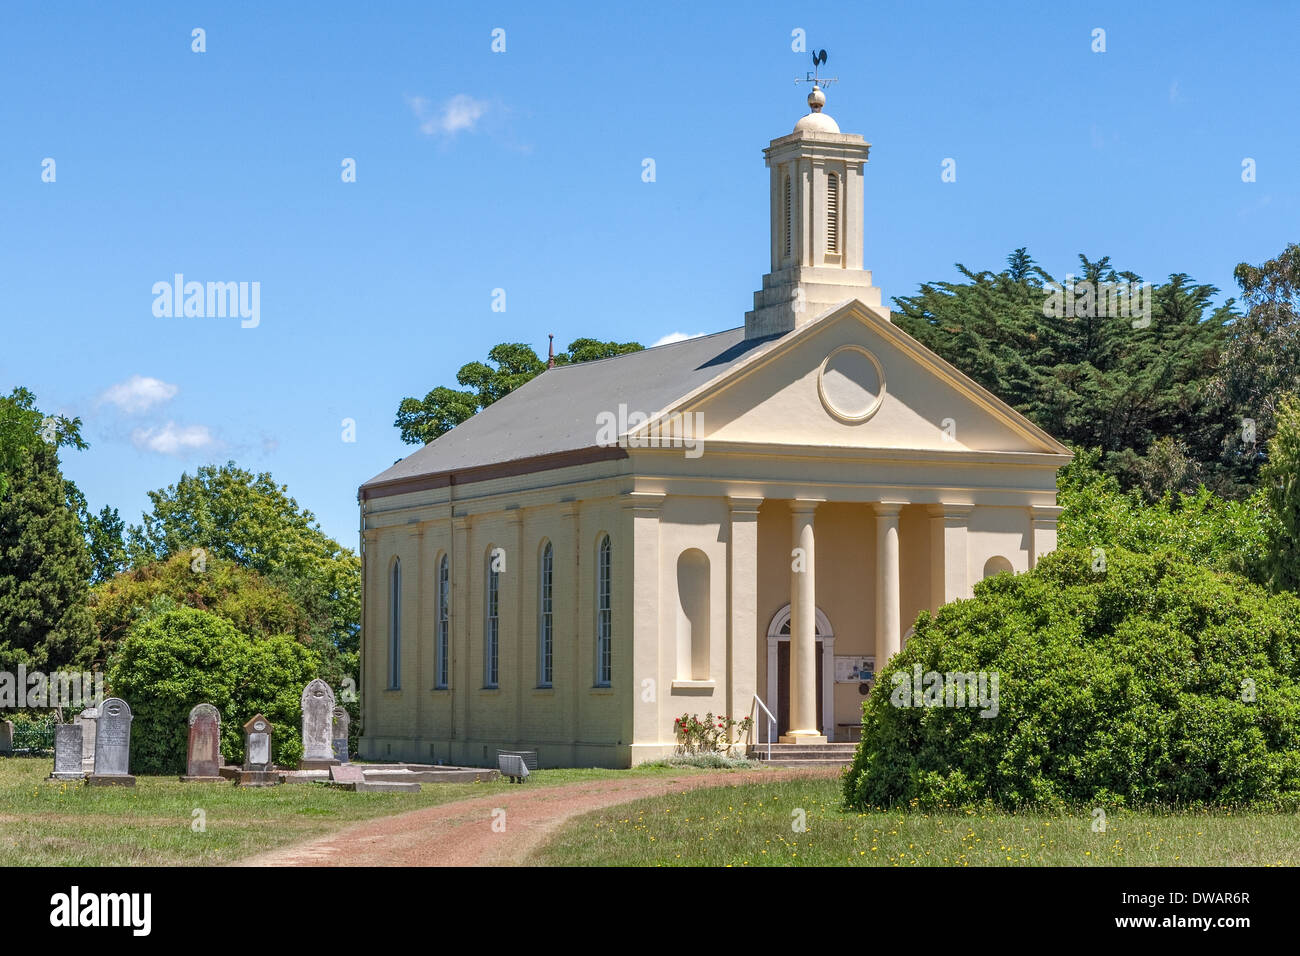 St Andrews Uniting Church, Presbyterianische, griechische Architektur, Evendale Stadt, mit georgianischen/viktorianischen Kolonialbauten, Tasmanien, Australien Stockfoto